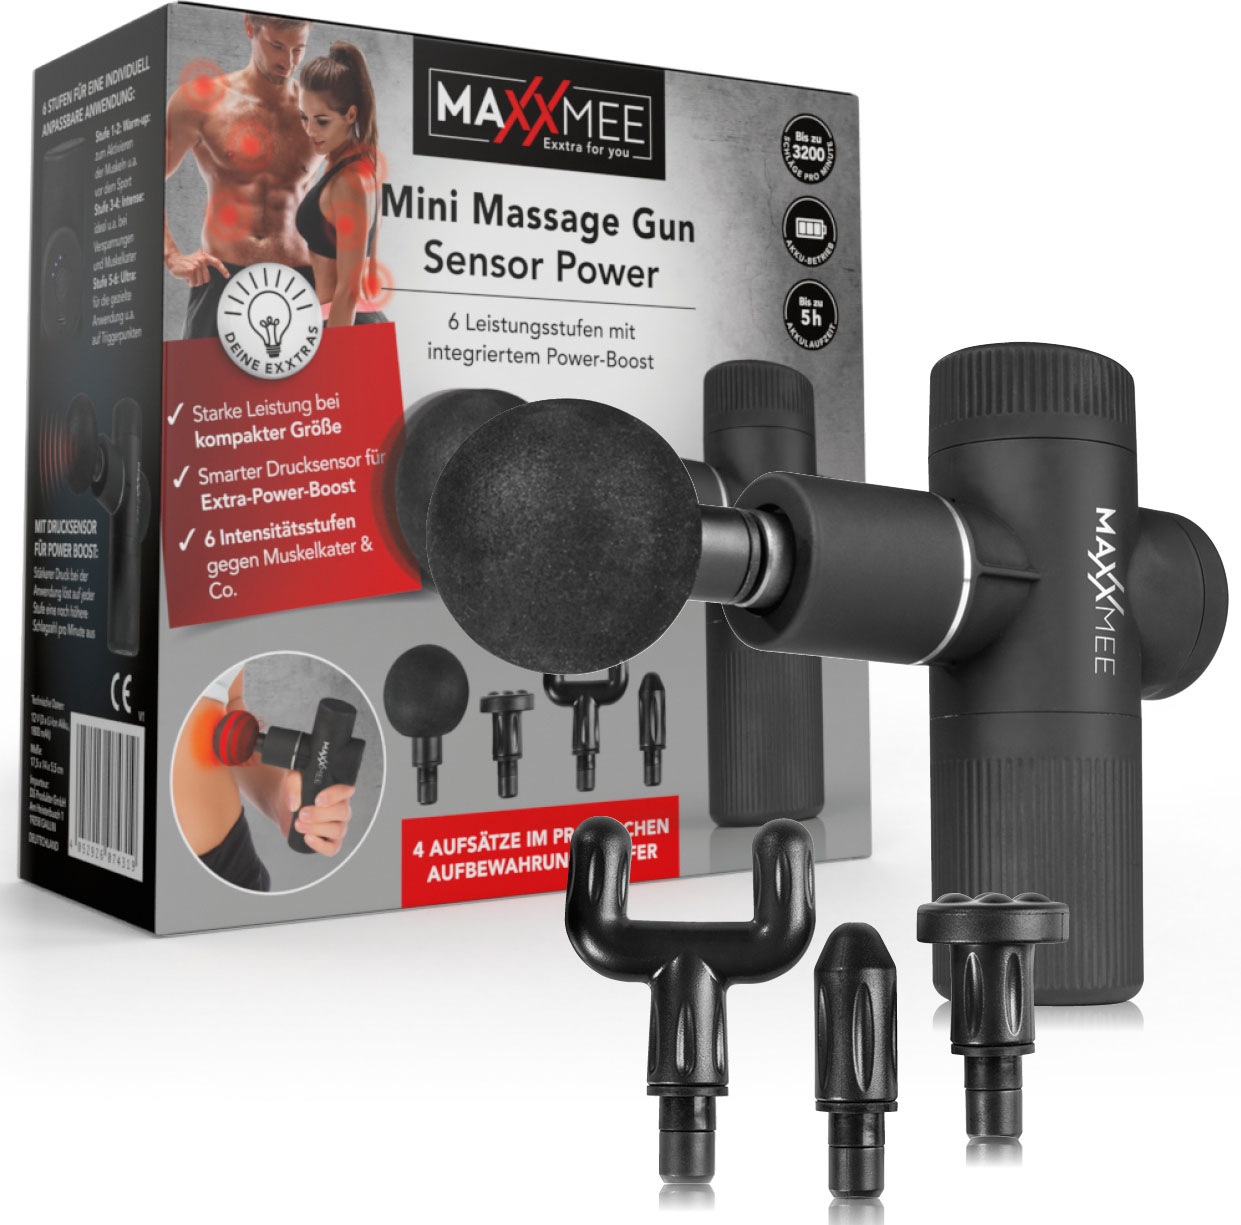 Maxxmee Massagepistole Mini Massage Gun Pro 7 Tlg Mit 3 Jahren Xxl Garantie Universalat